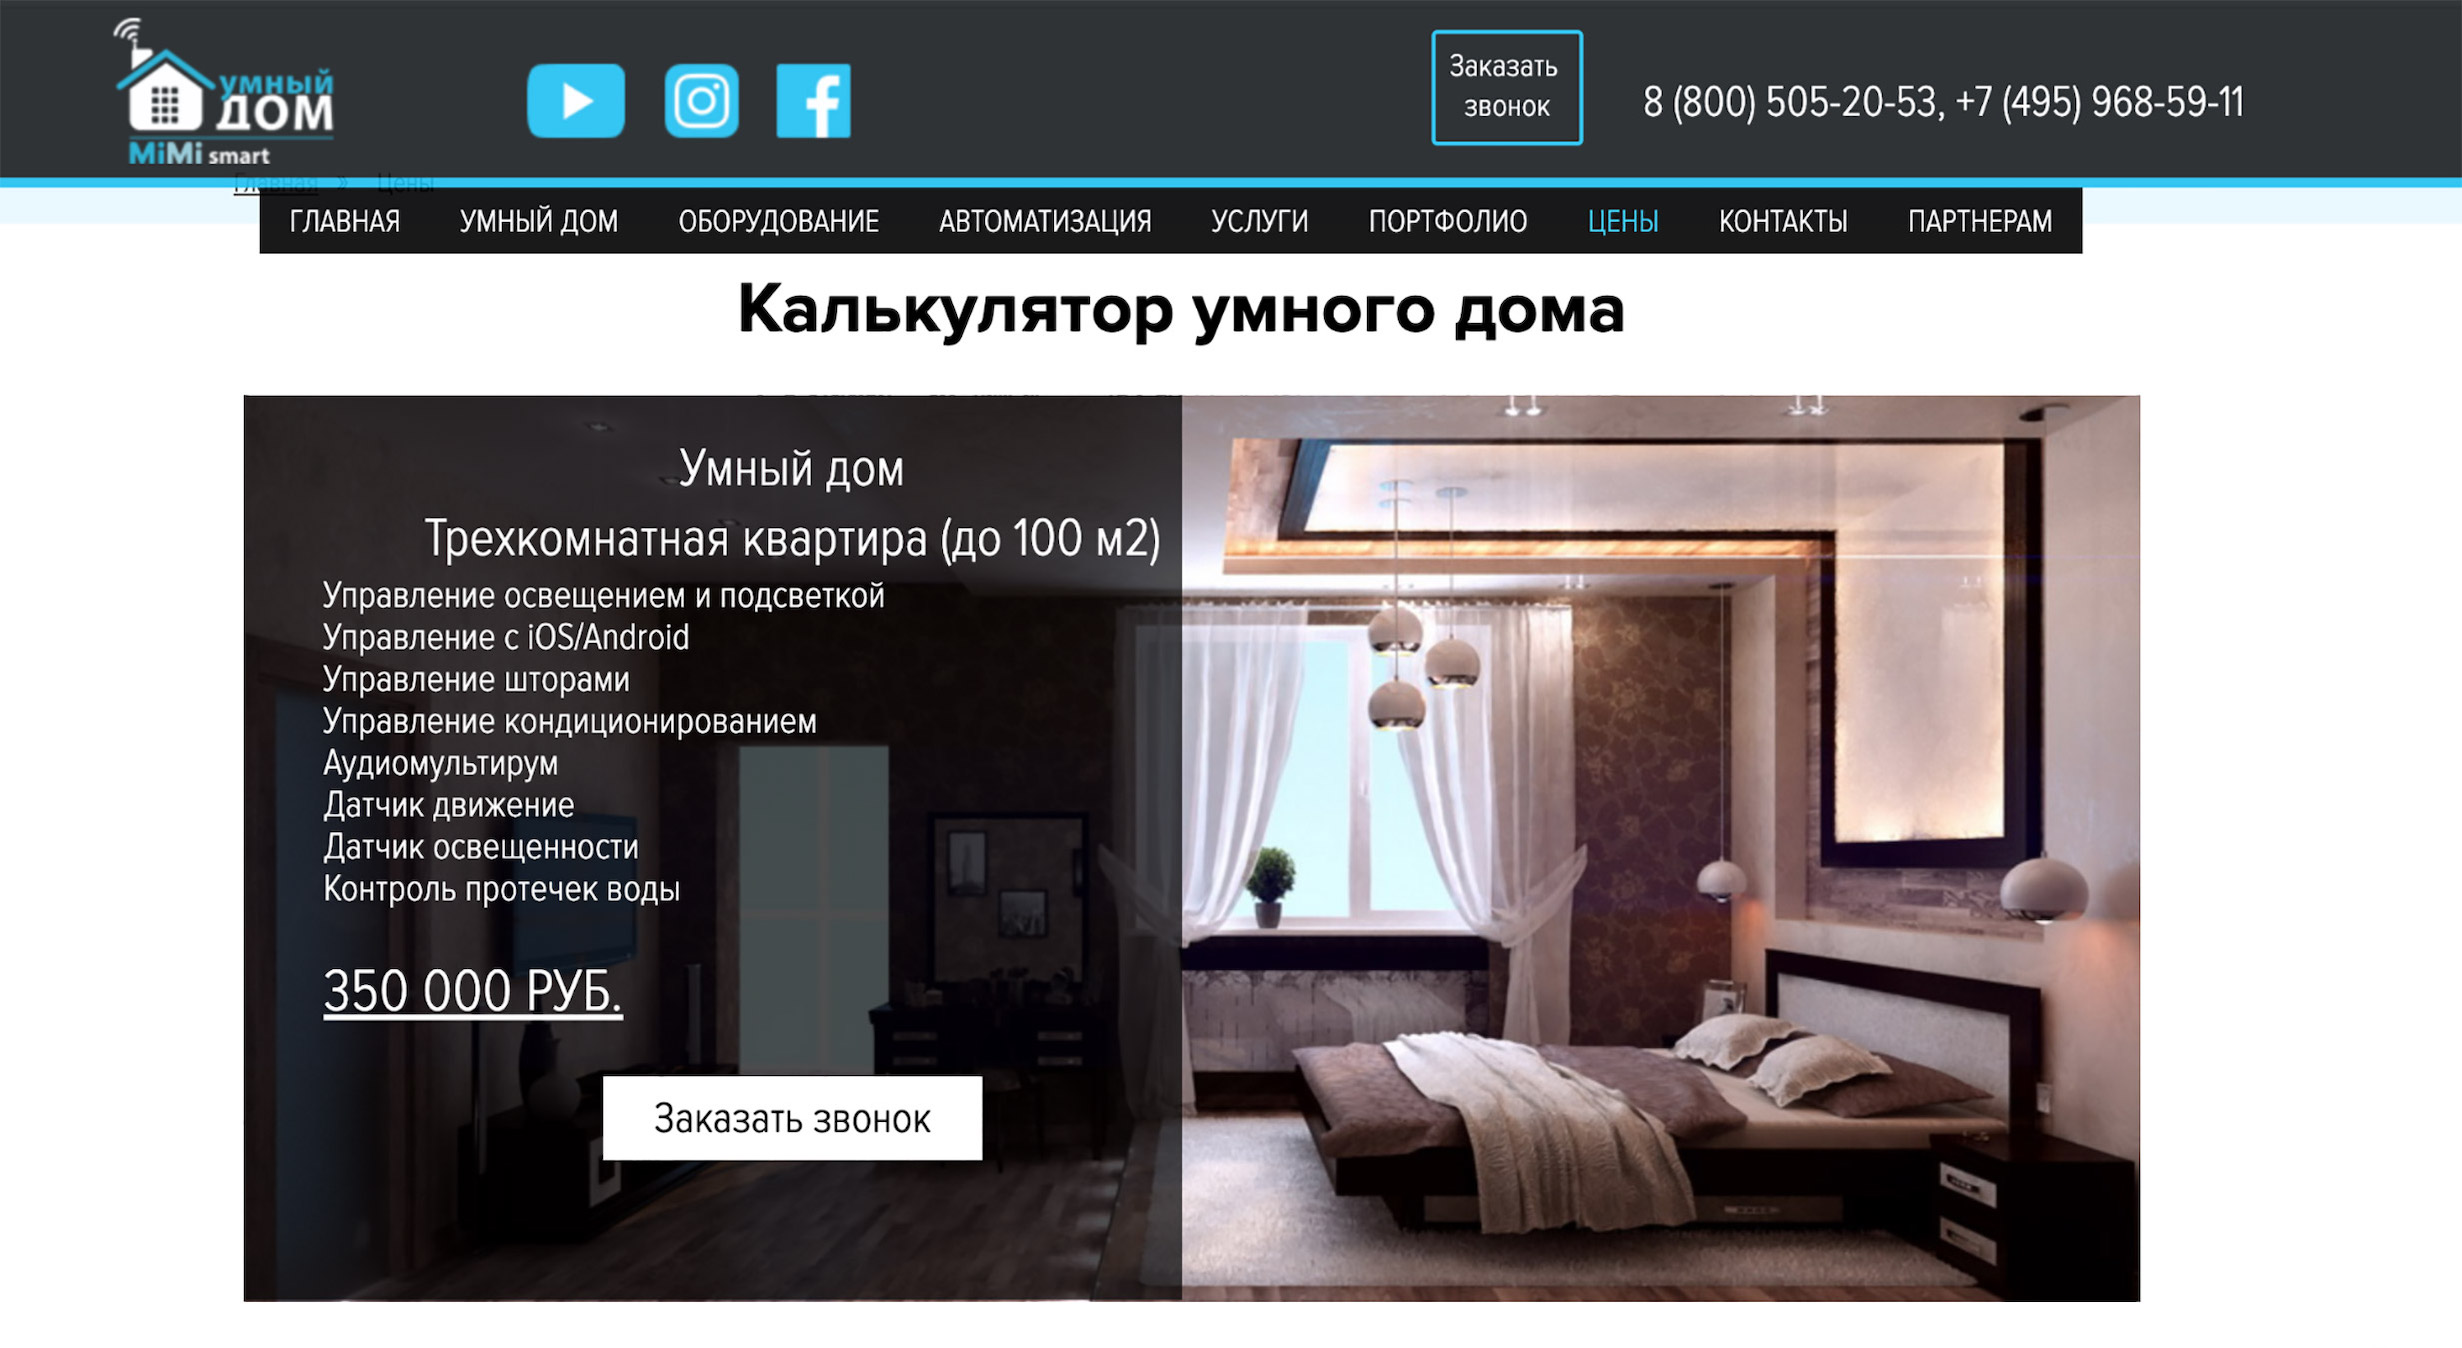 Компания Mimismart была готова поставить мне умный дом за 350 тысяч рублей в 2019 году. В 2023 году компания уже не работает в России